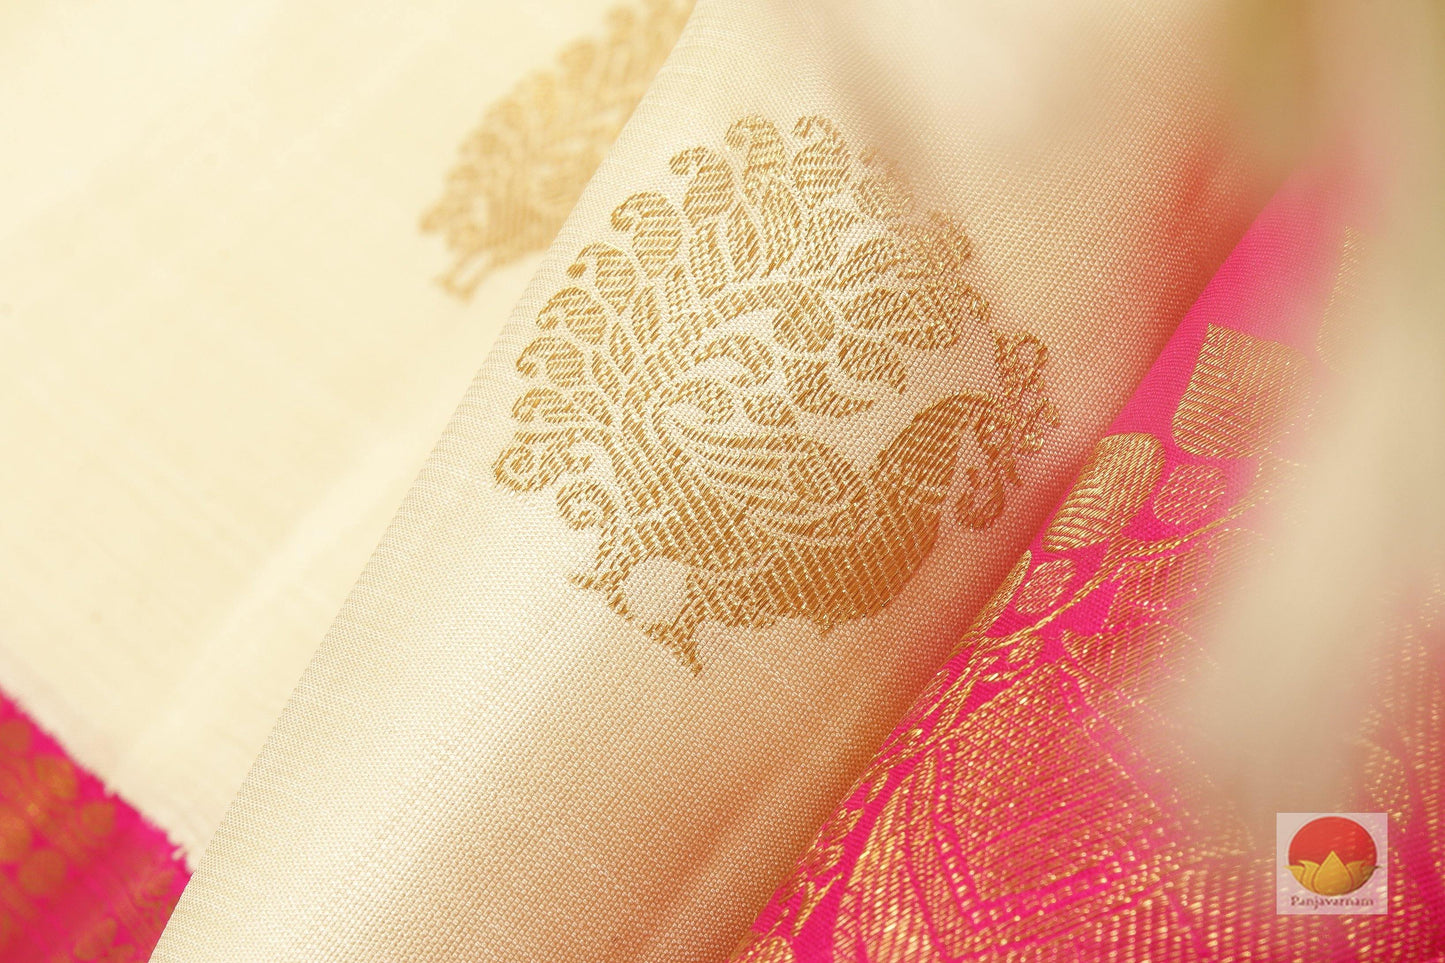 Traditional Design Handwoven Pure Silk Kanjivaram Saree - Pure Zari - PV G 1760 - Archives - Silk Sari - Panjavarnam